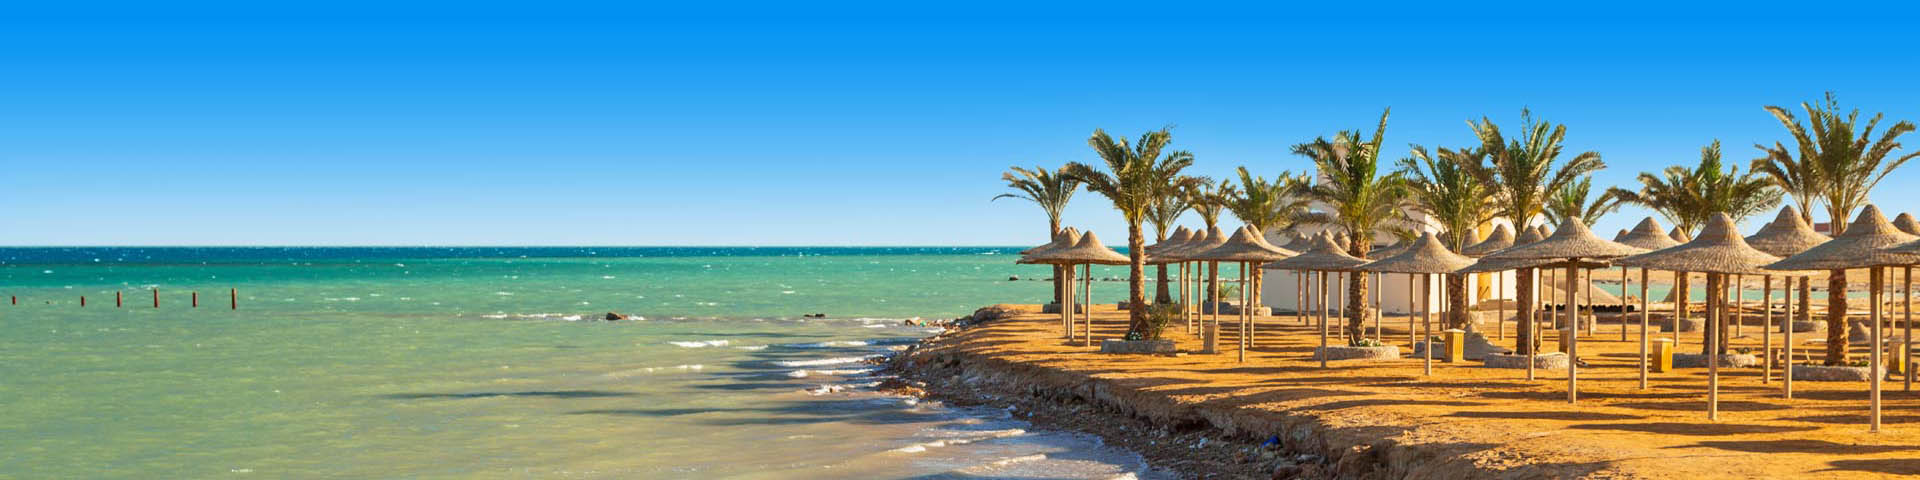 Strand met parasols, wuivende palmbomen en een blauwe zee 